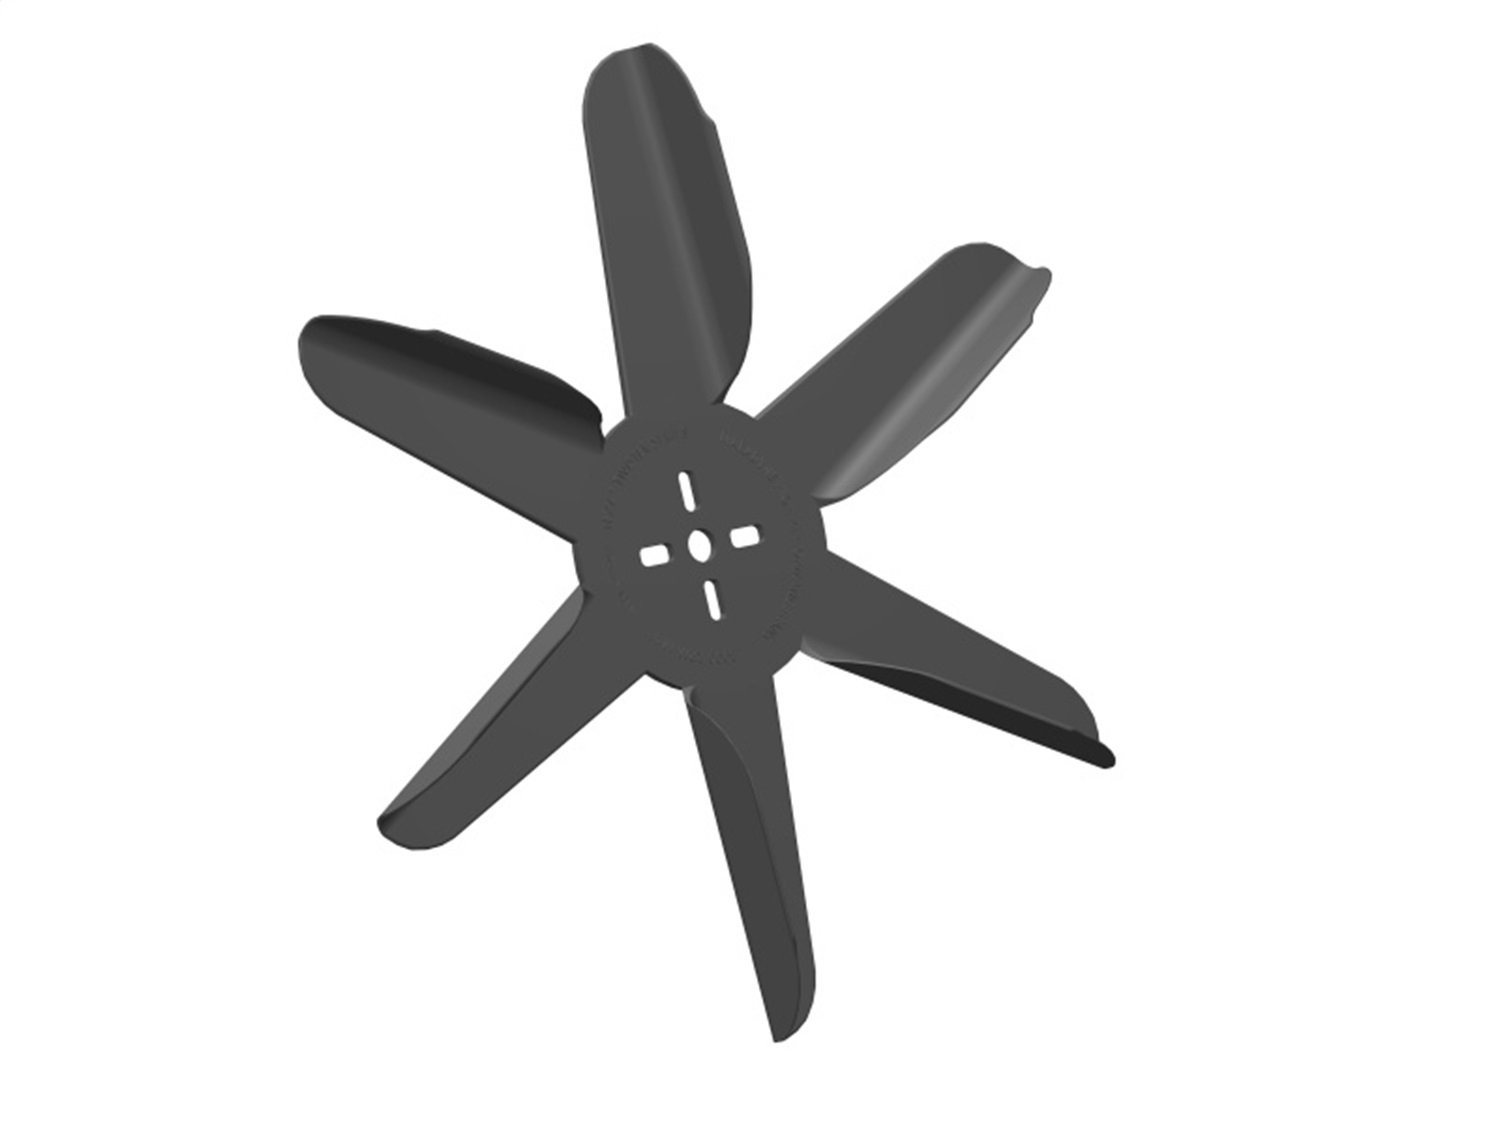 Texas Twister Engine-Driven Flex Fan Blade, Diameter: 14 in.